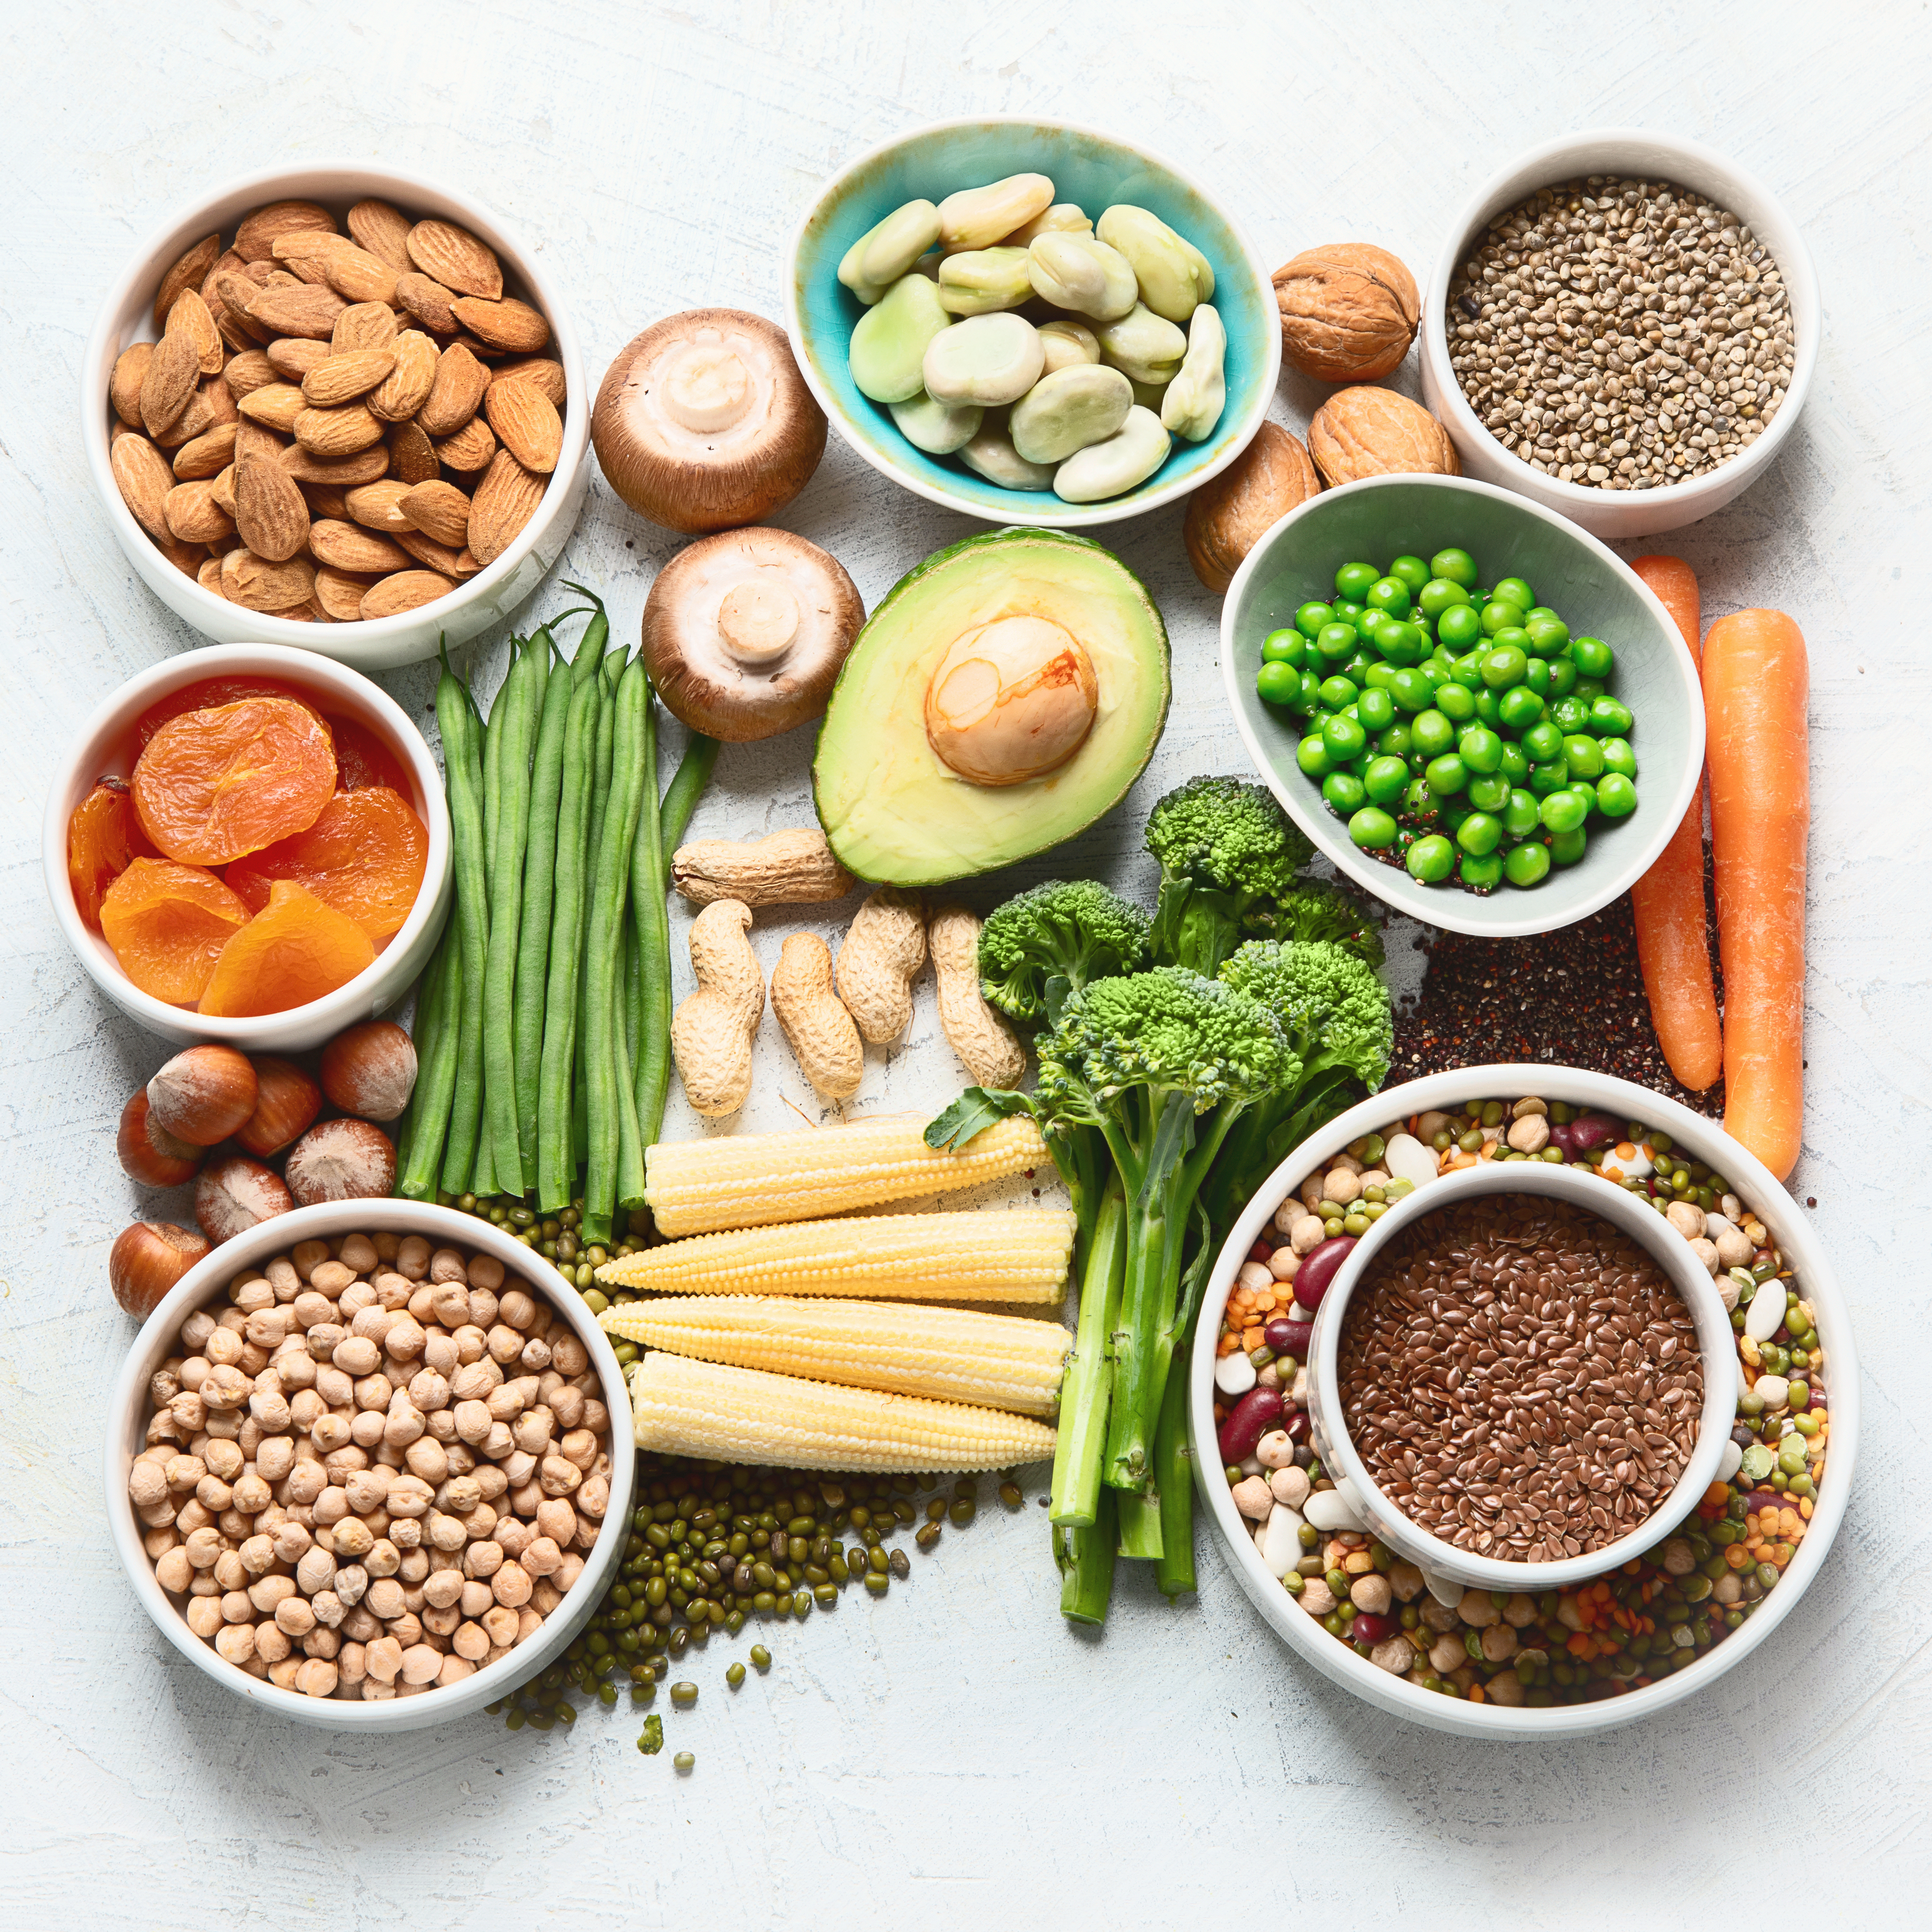 Image de produits alimentaires à base de protéines végétales